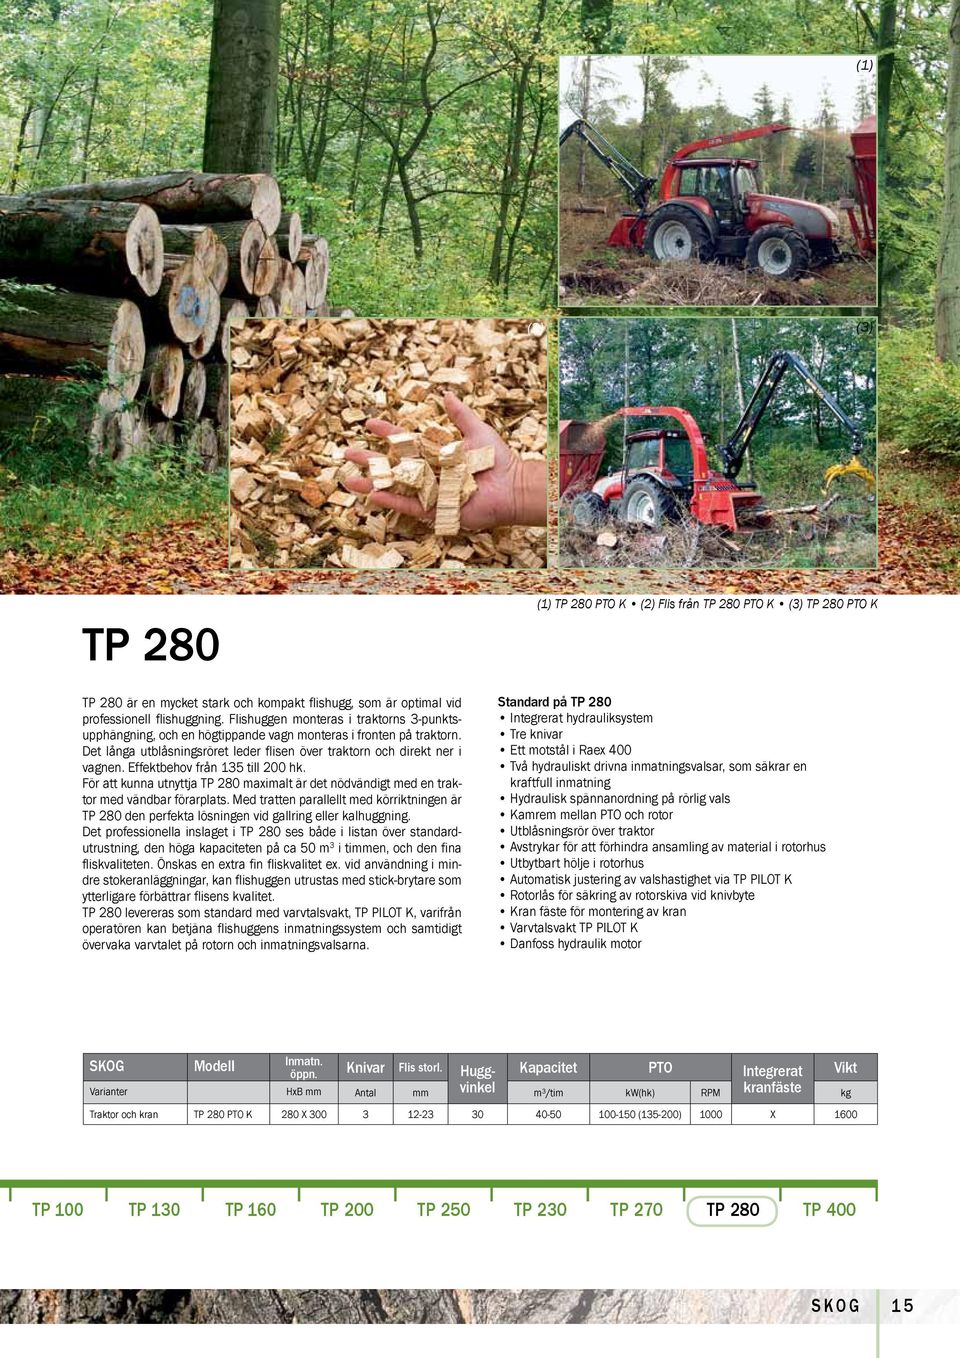 Effektbehov från 135 till 200 hk. För att kunna utnyttja TP 280 maximalt är det nödvändigt med en traktor med vändbar förarplats.